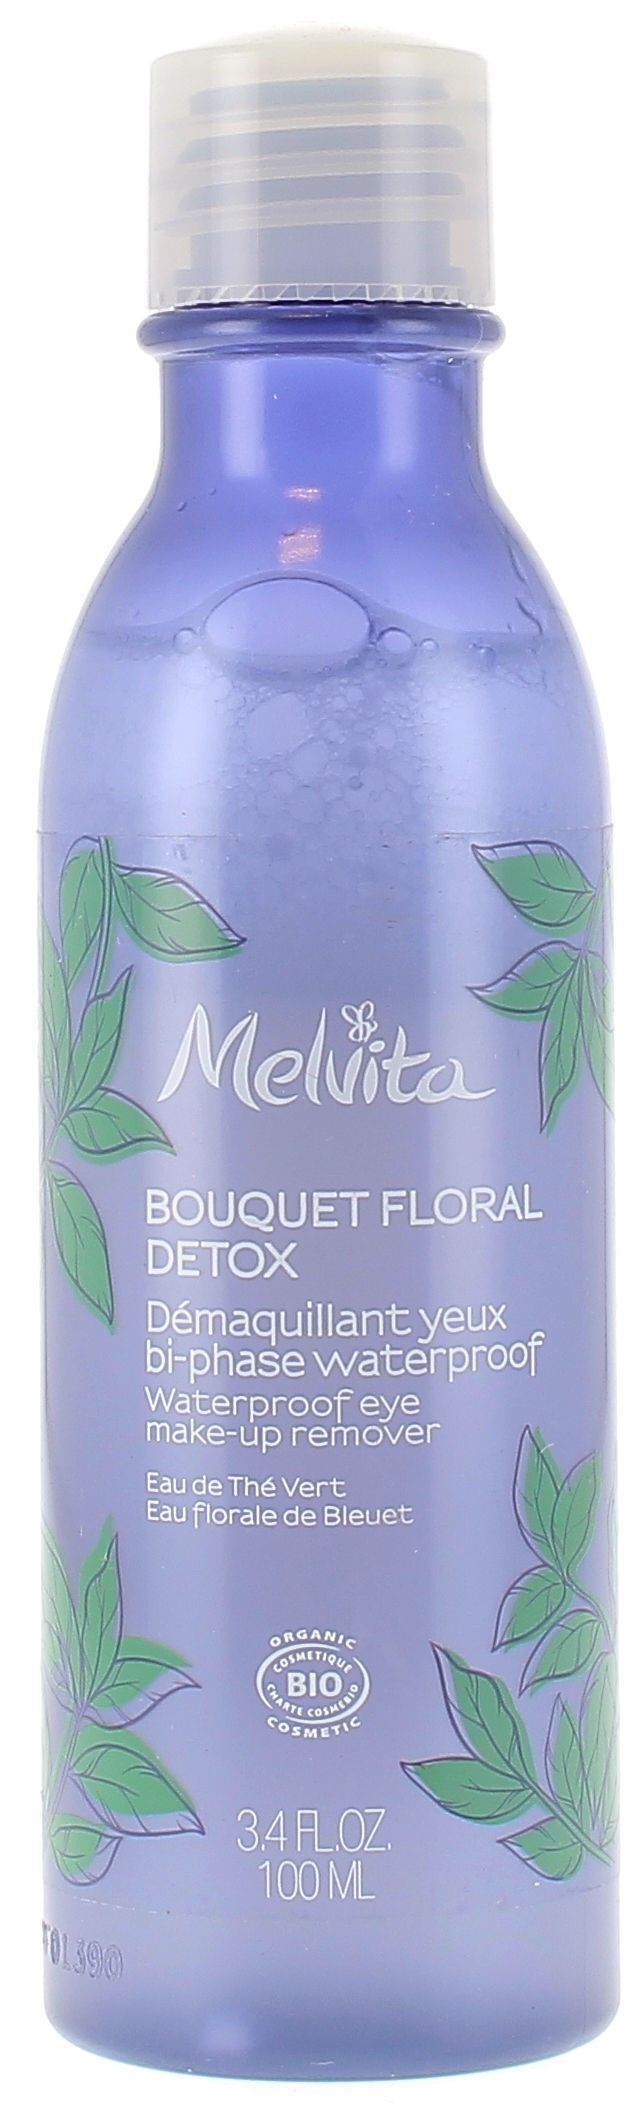 Démaquillant yeux bi-phase bouquet floral détox waterproof bio Melvita - bouteille de 100 ml